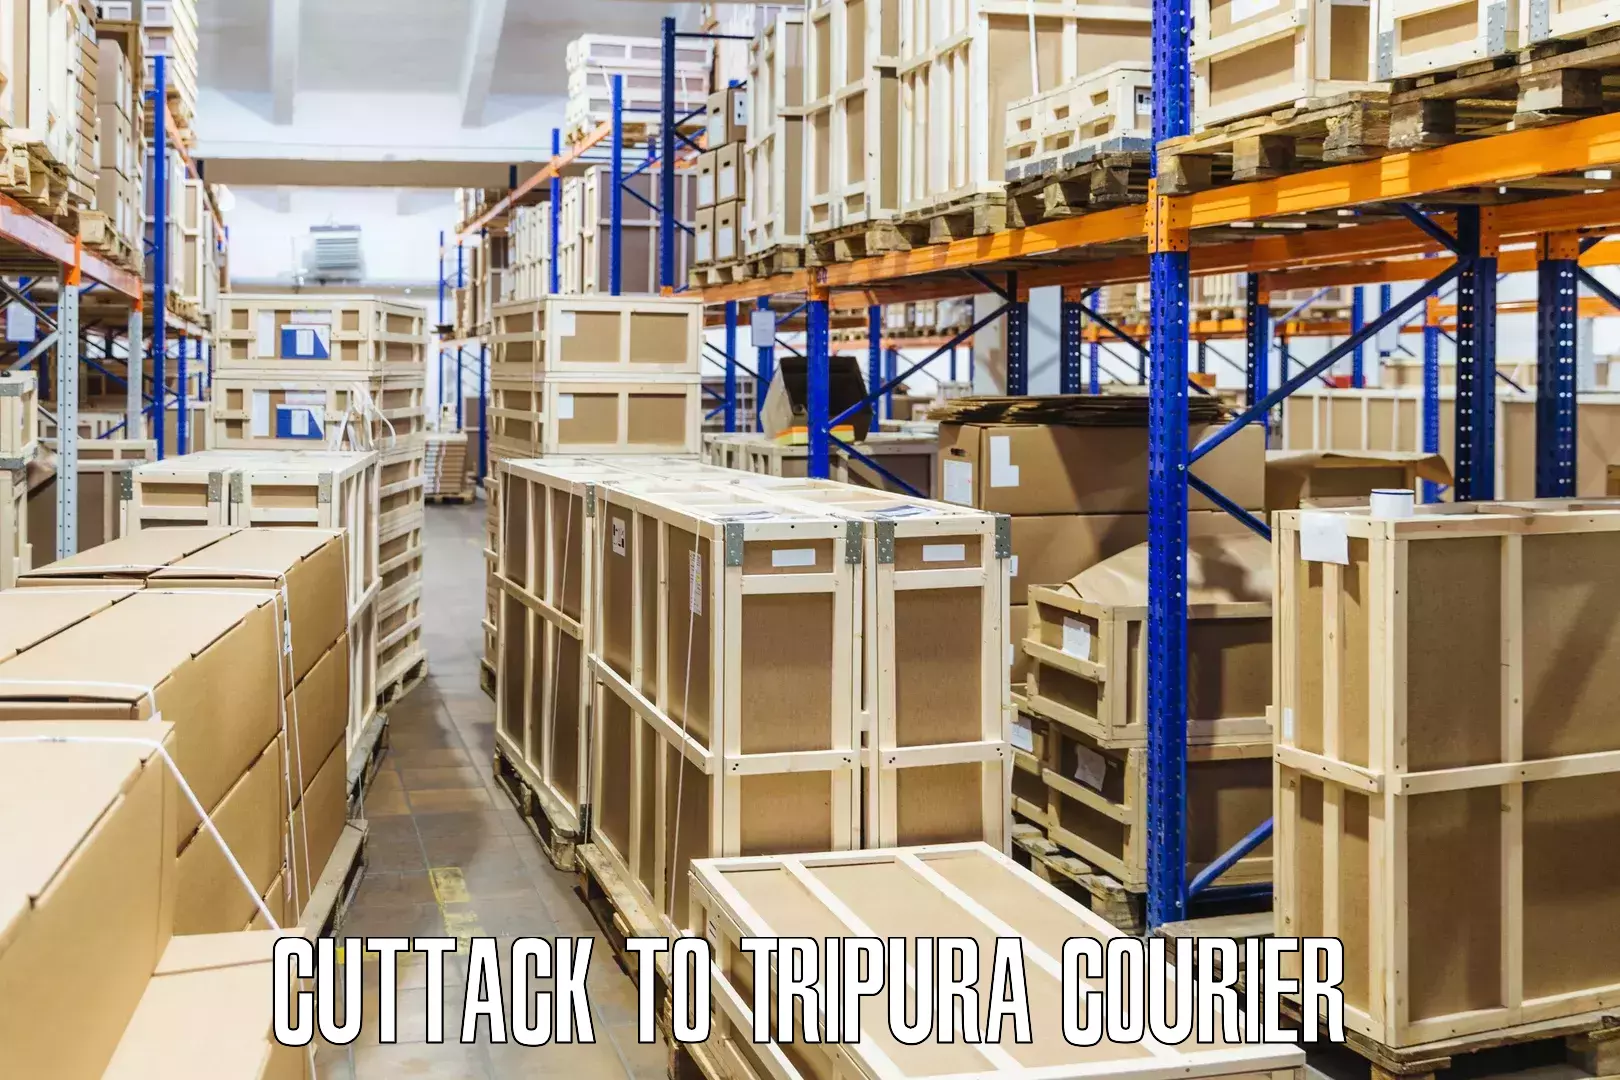 Quick parcel dispatch Cuttack to Tripura